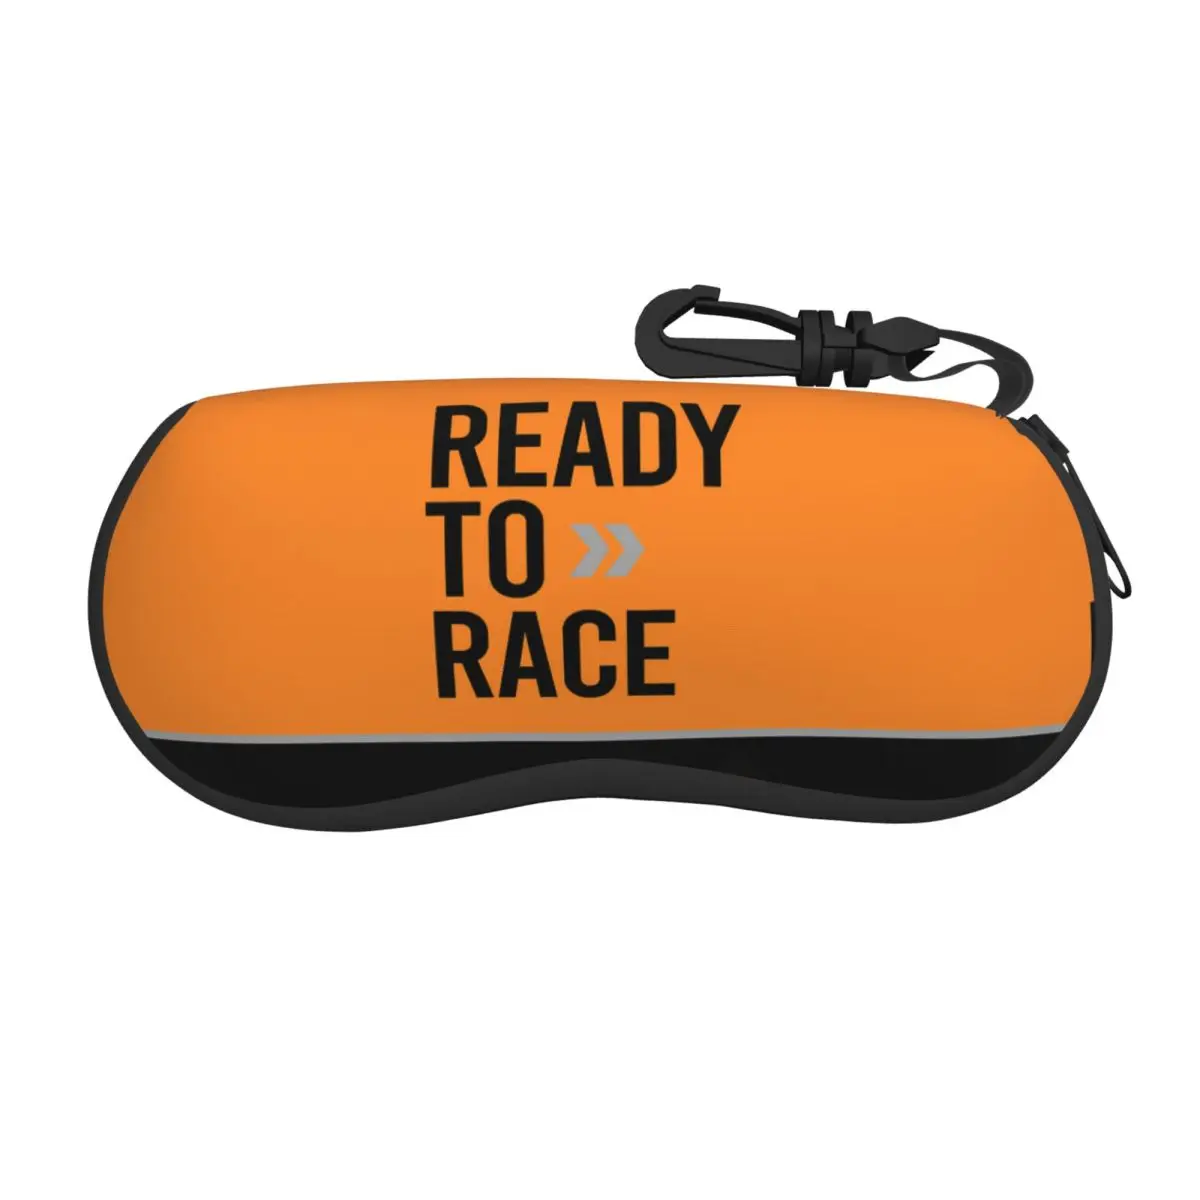 Калъф за очила Ready To Race, за жени и мъже, мека защитна кутия за слънчеви очила за мотоциклет, предназначено за състезания.